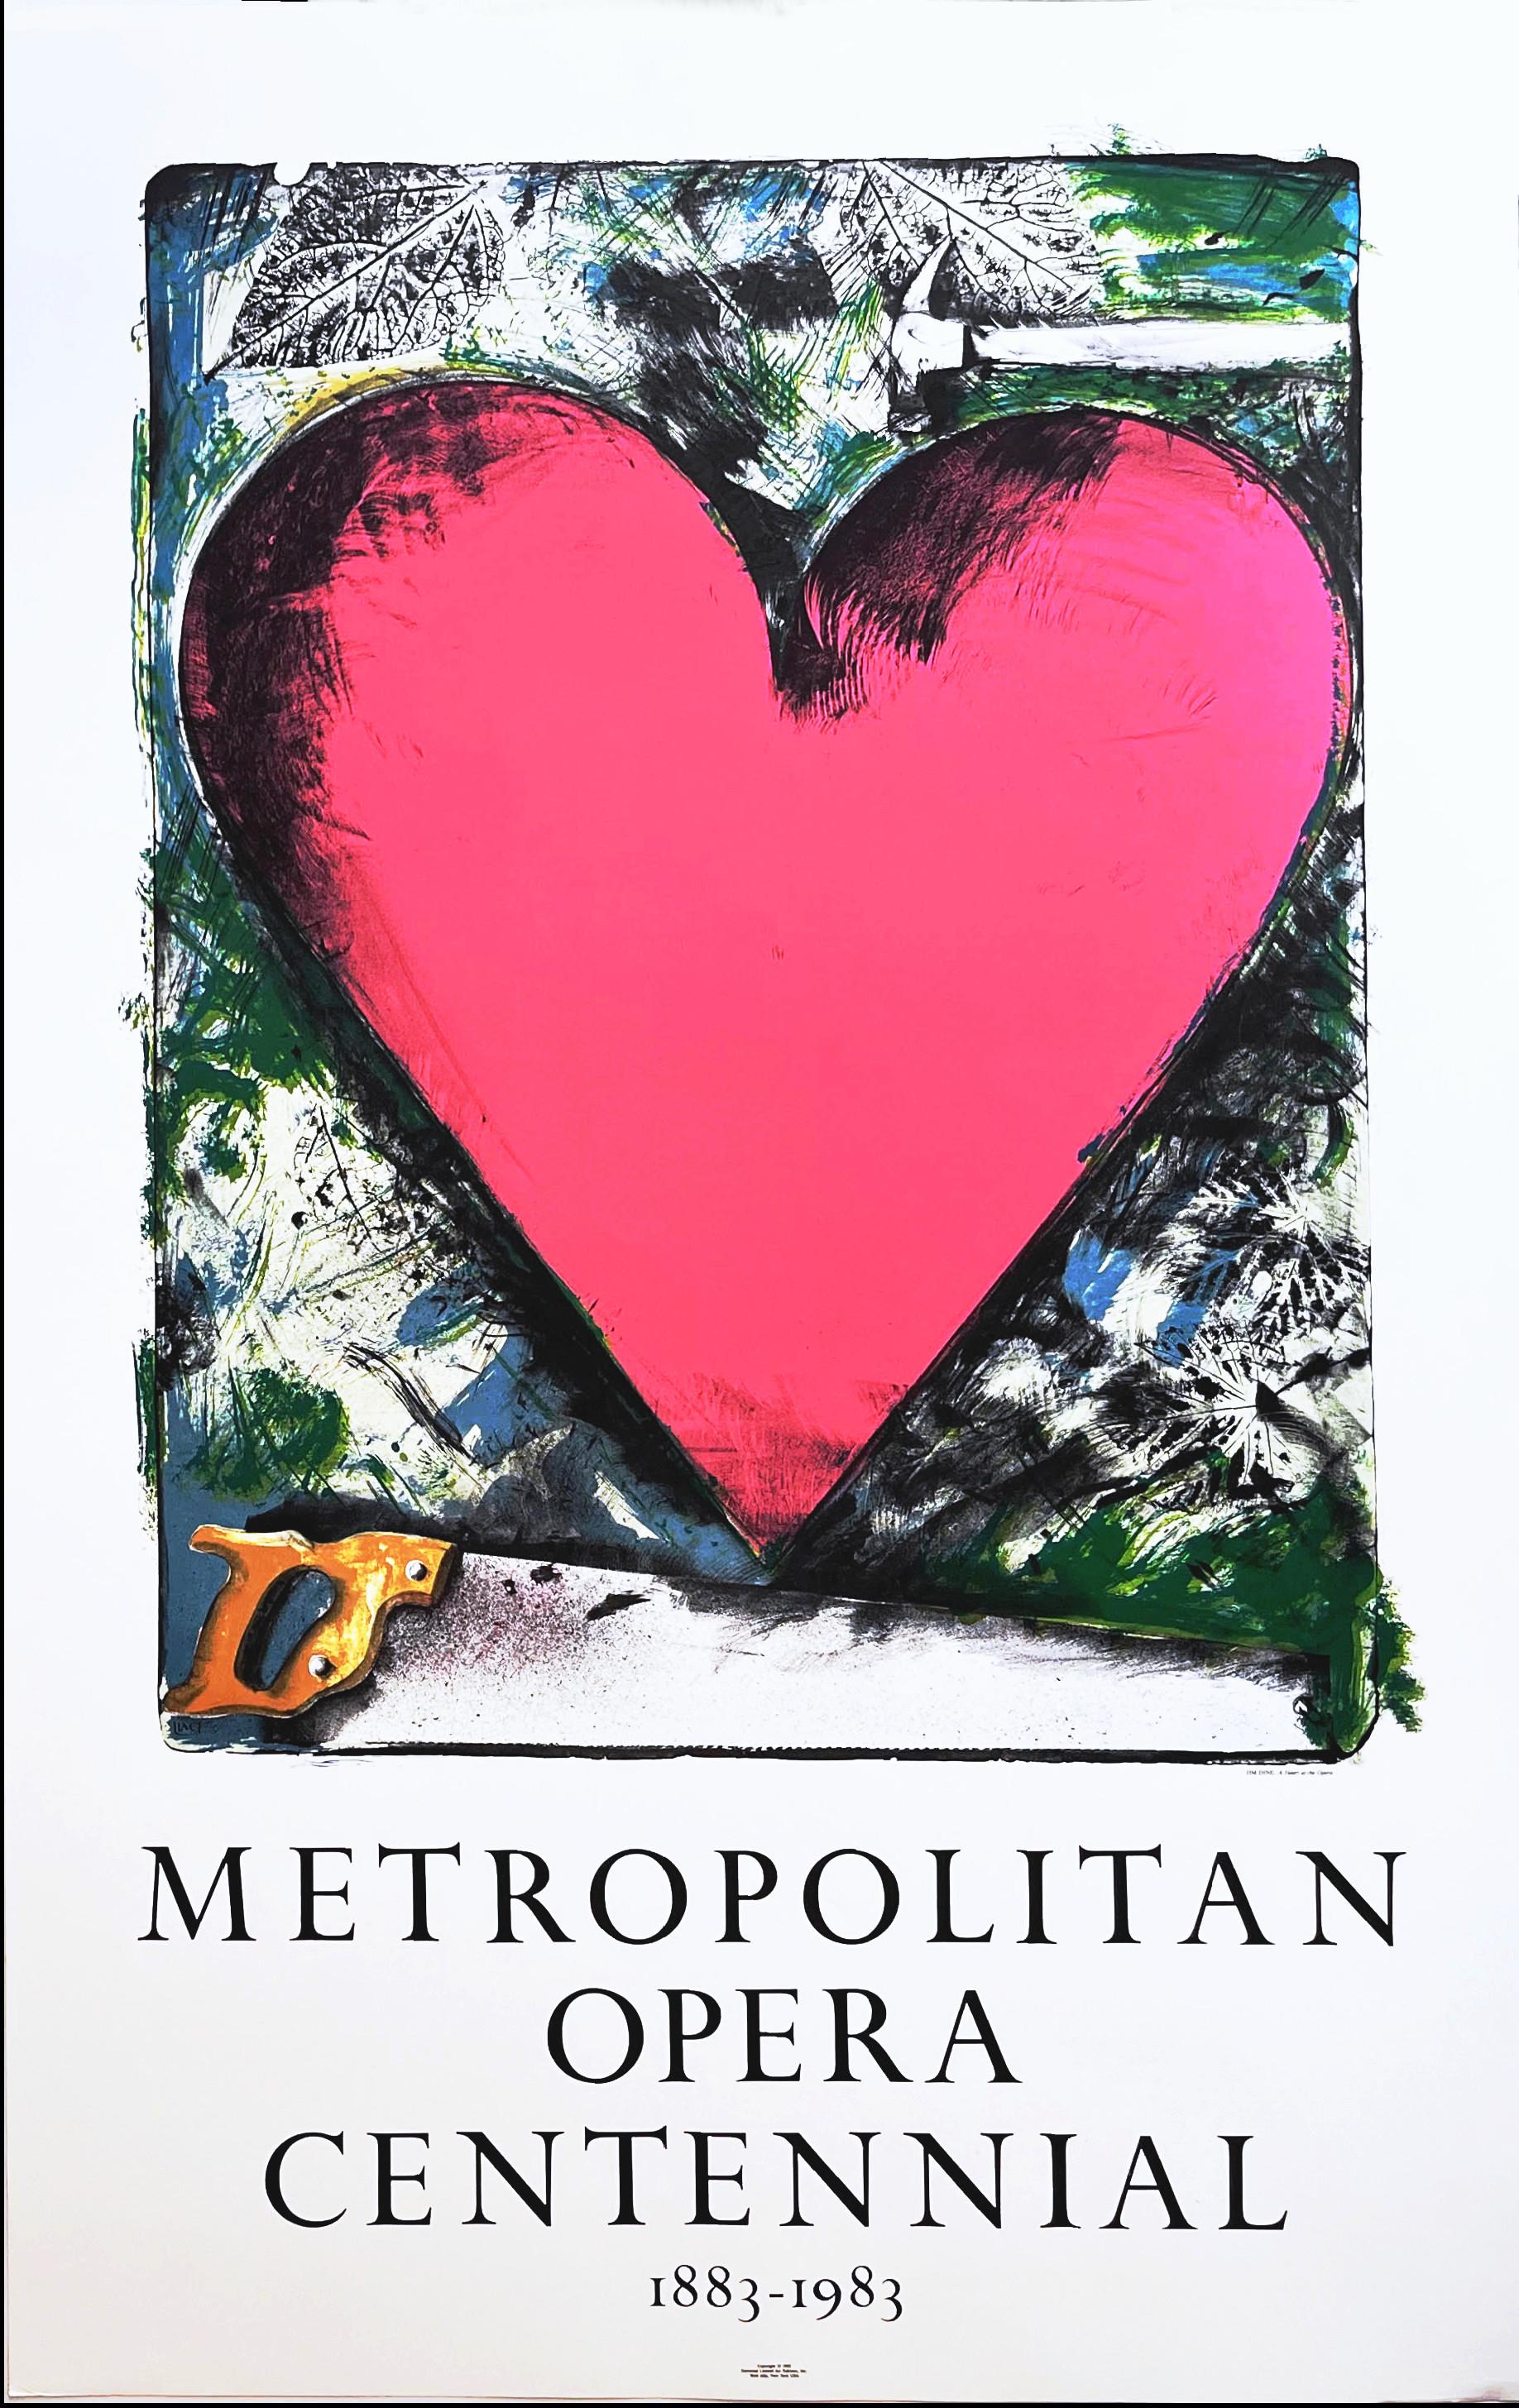 Pink Heart : Metropolitan Opera Centennial 1883-1983, affiche lithographique Pop Art